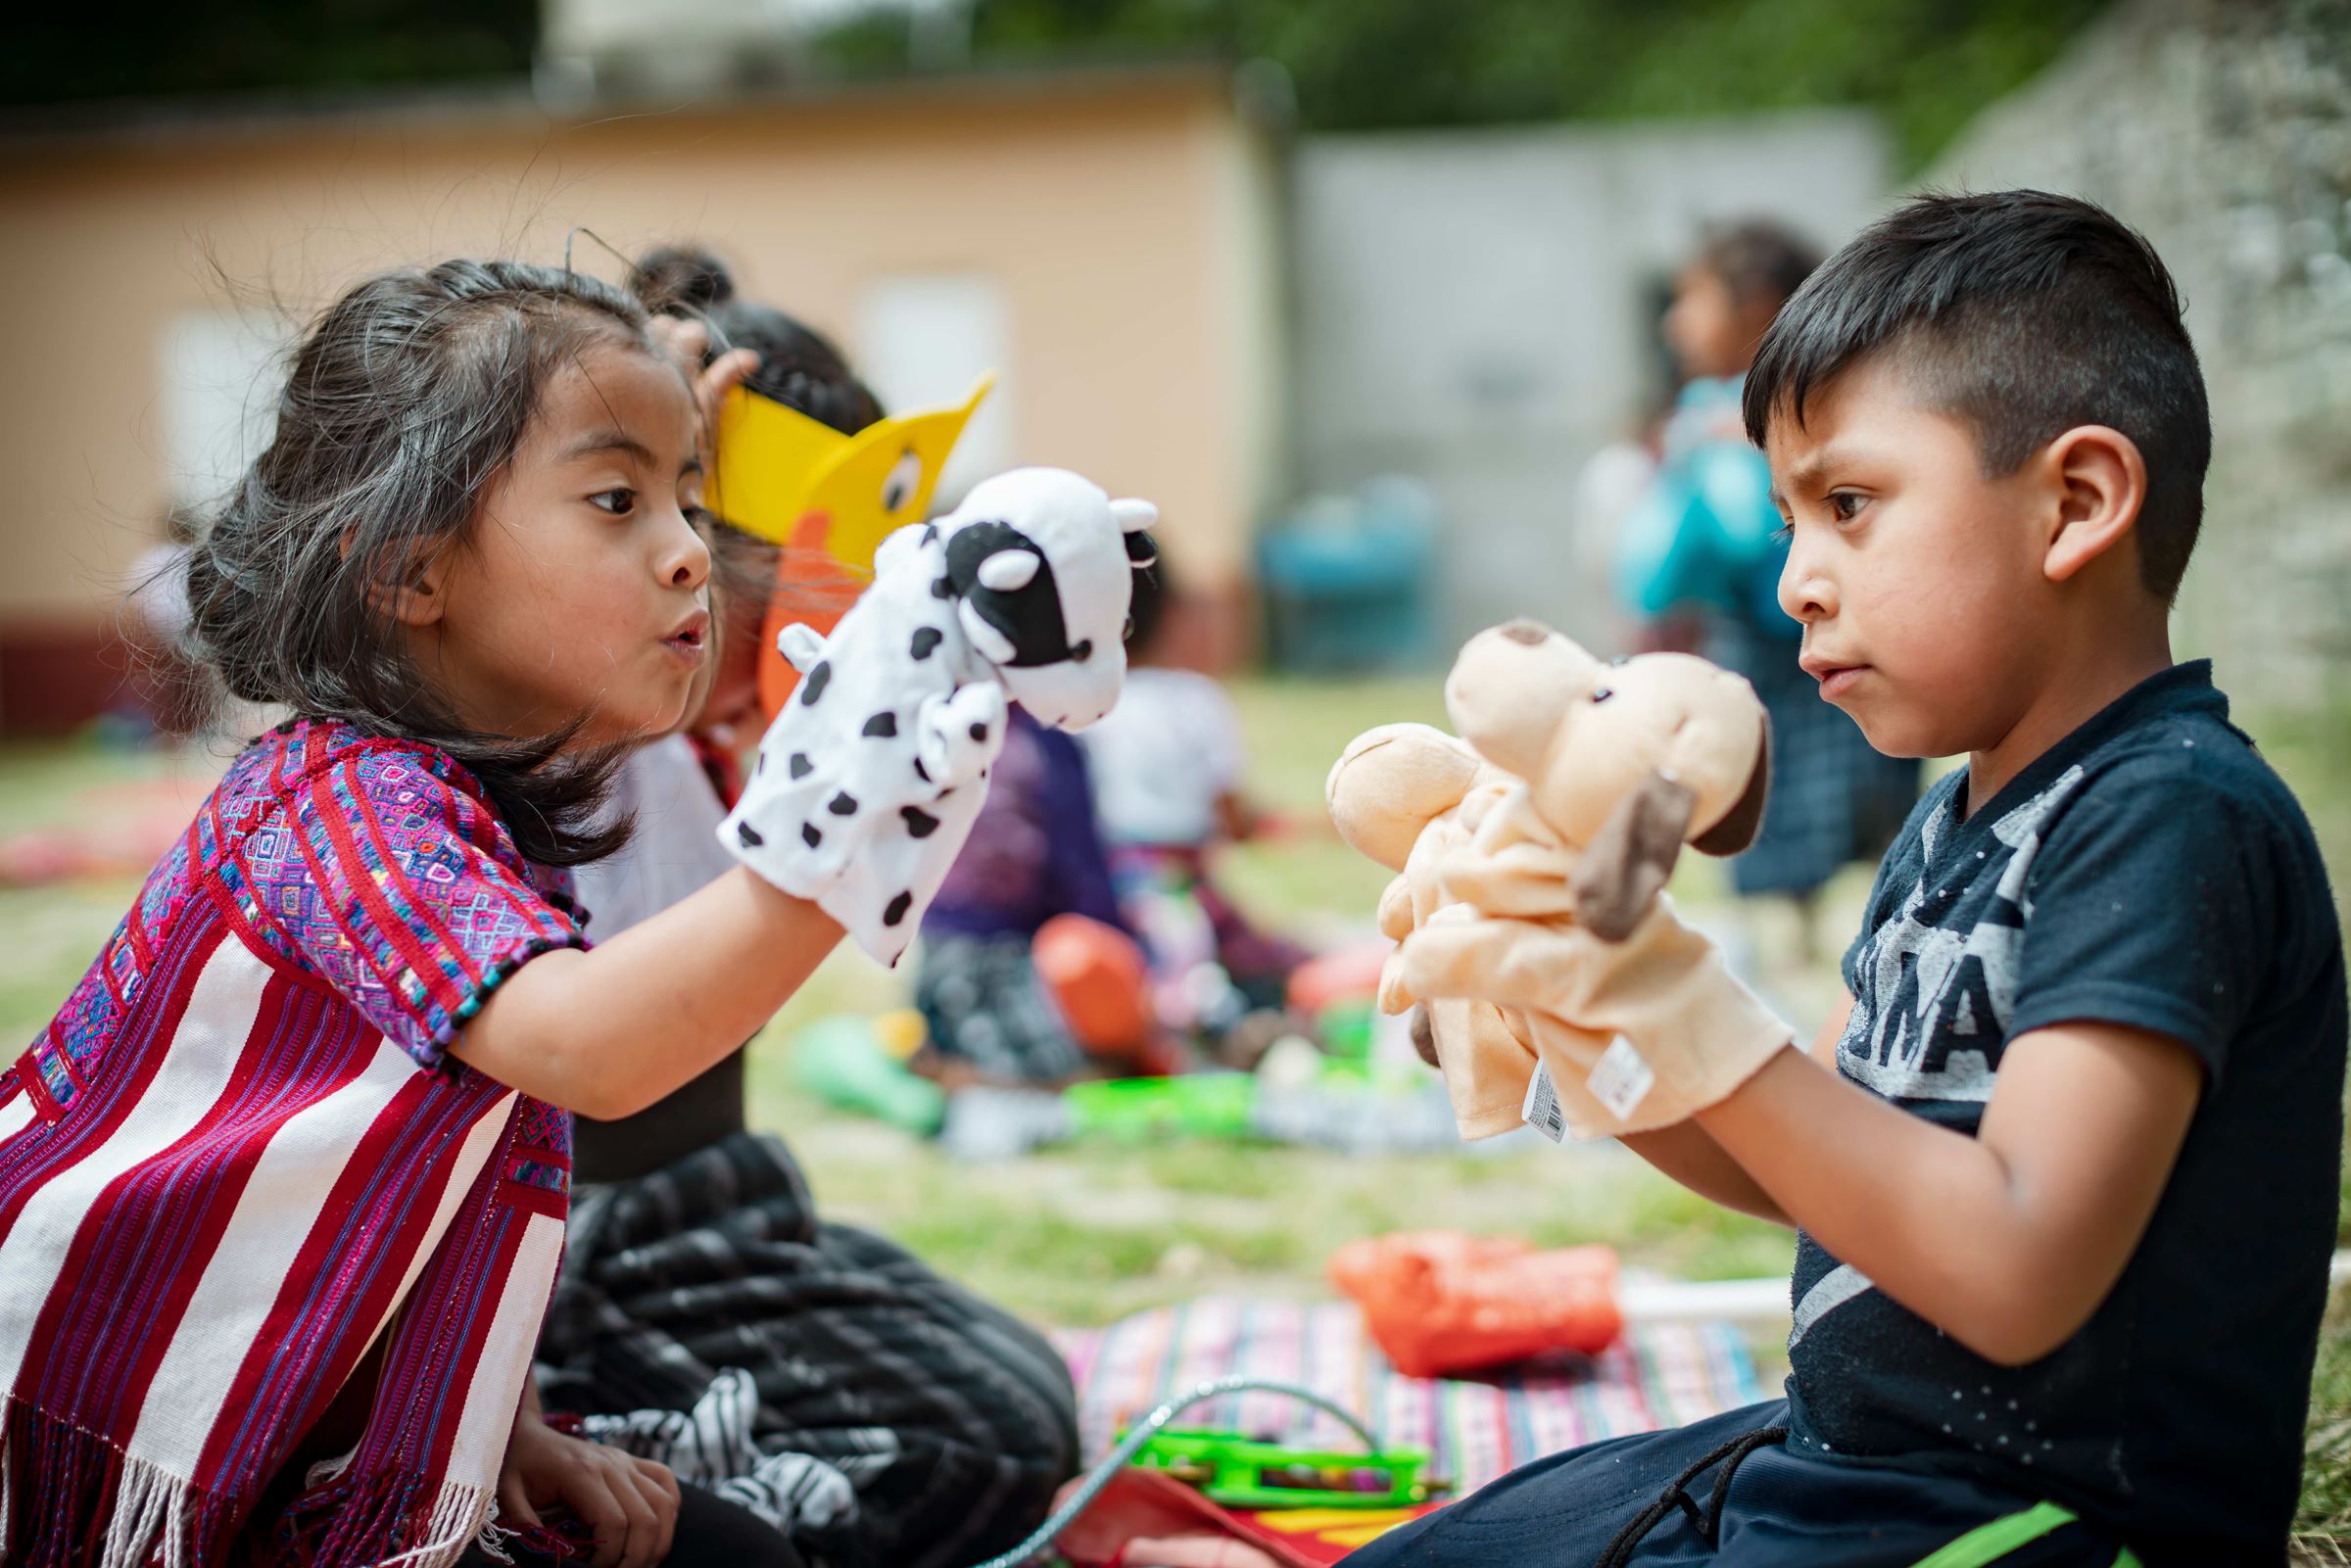 Ein Mädchen und ein Junge aus Guatemala spielen mit Handpuppen. (Quelle: Jakob Studnar)